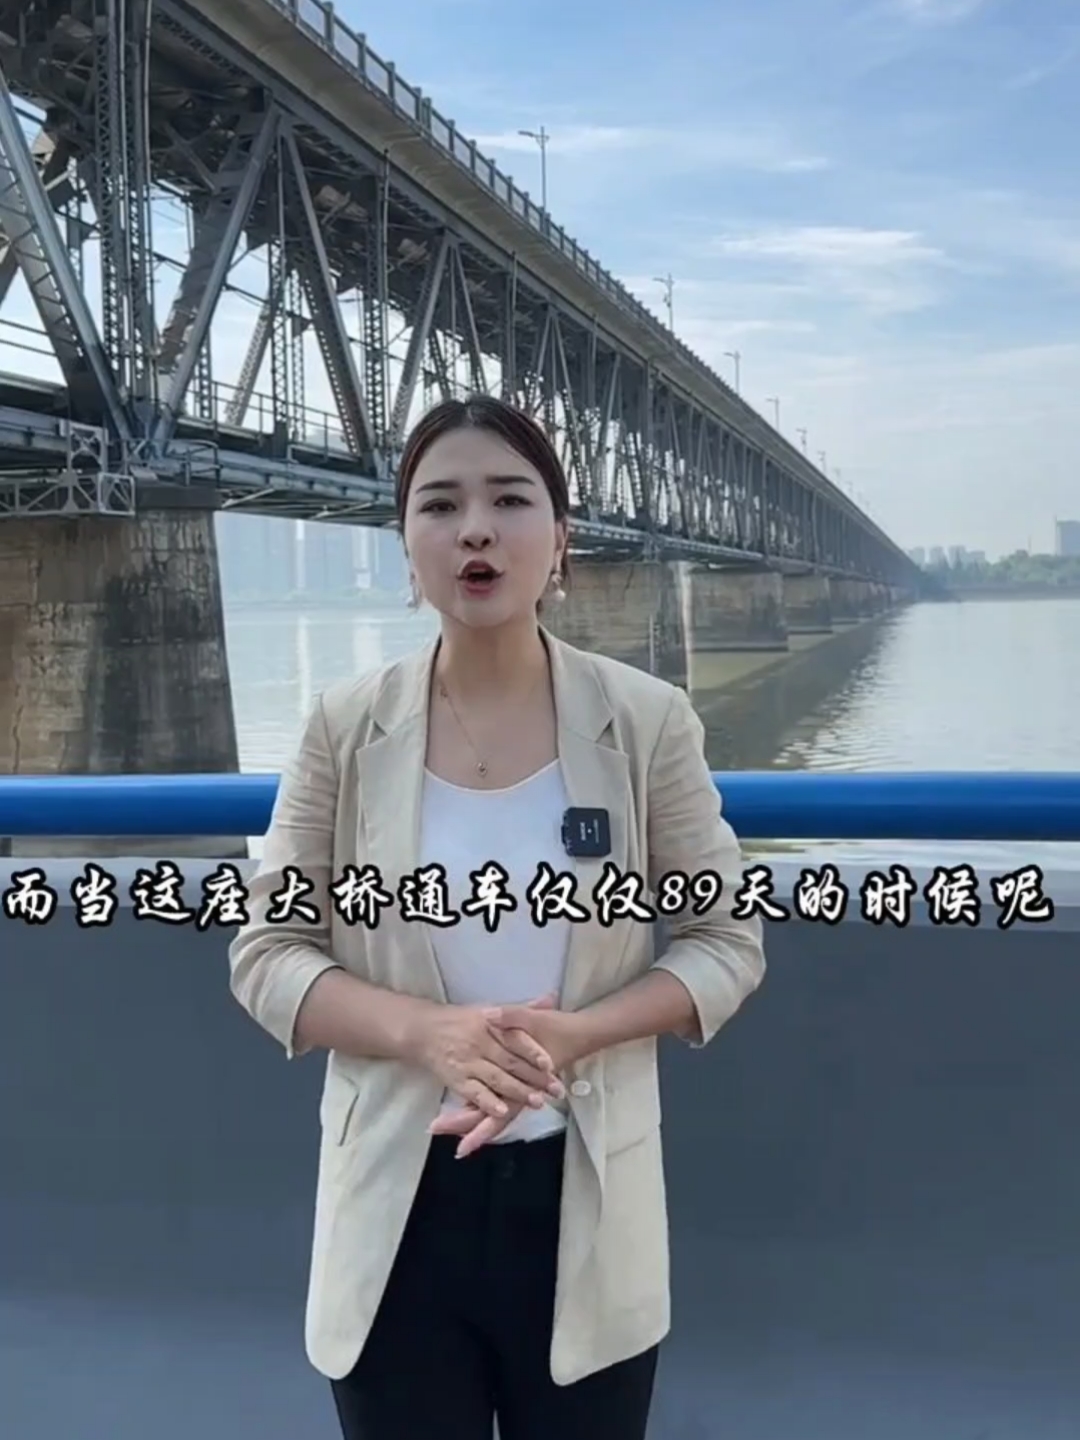 中国命运最坎坷的大桥